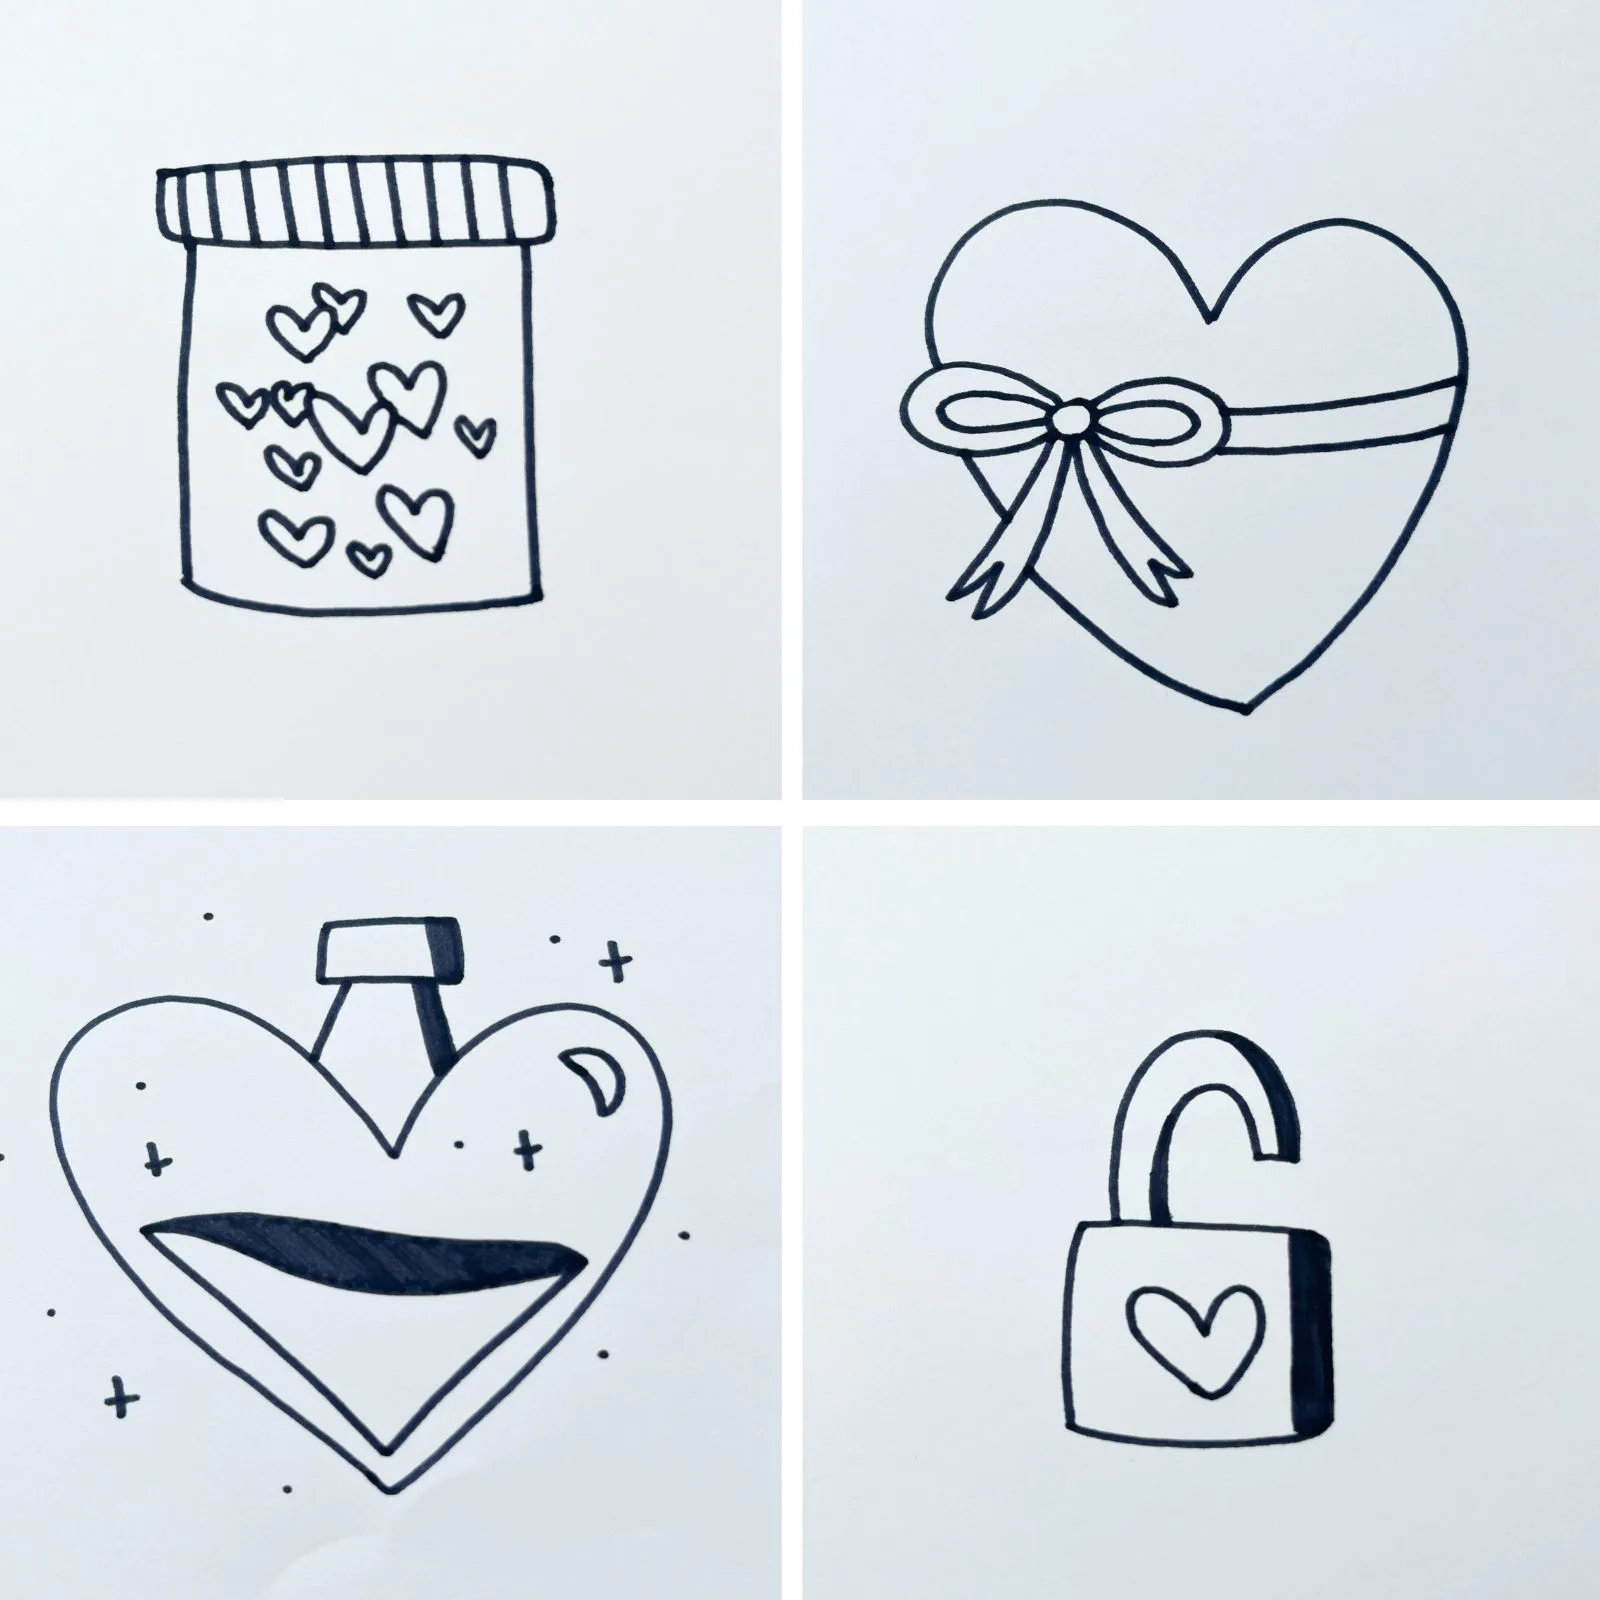 How to Draw A Heart | TikTok